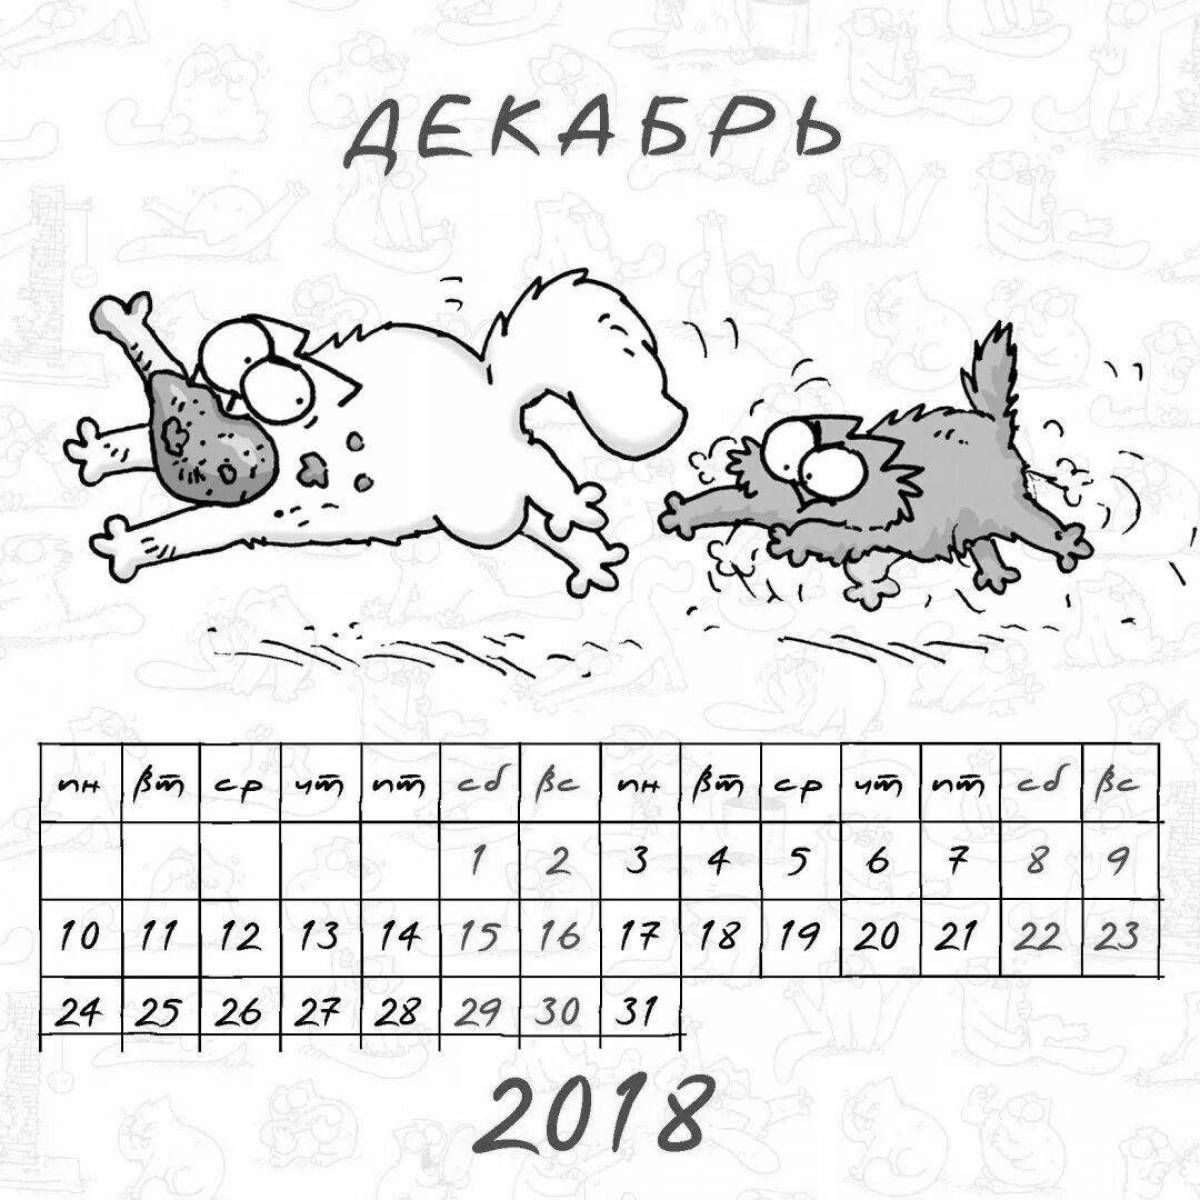 January 2023 fun calendar